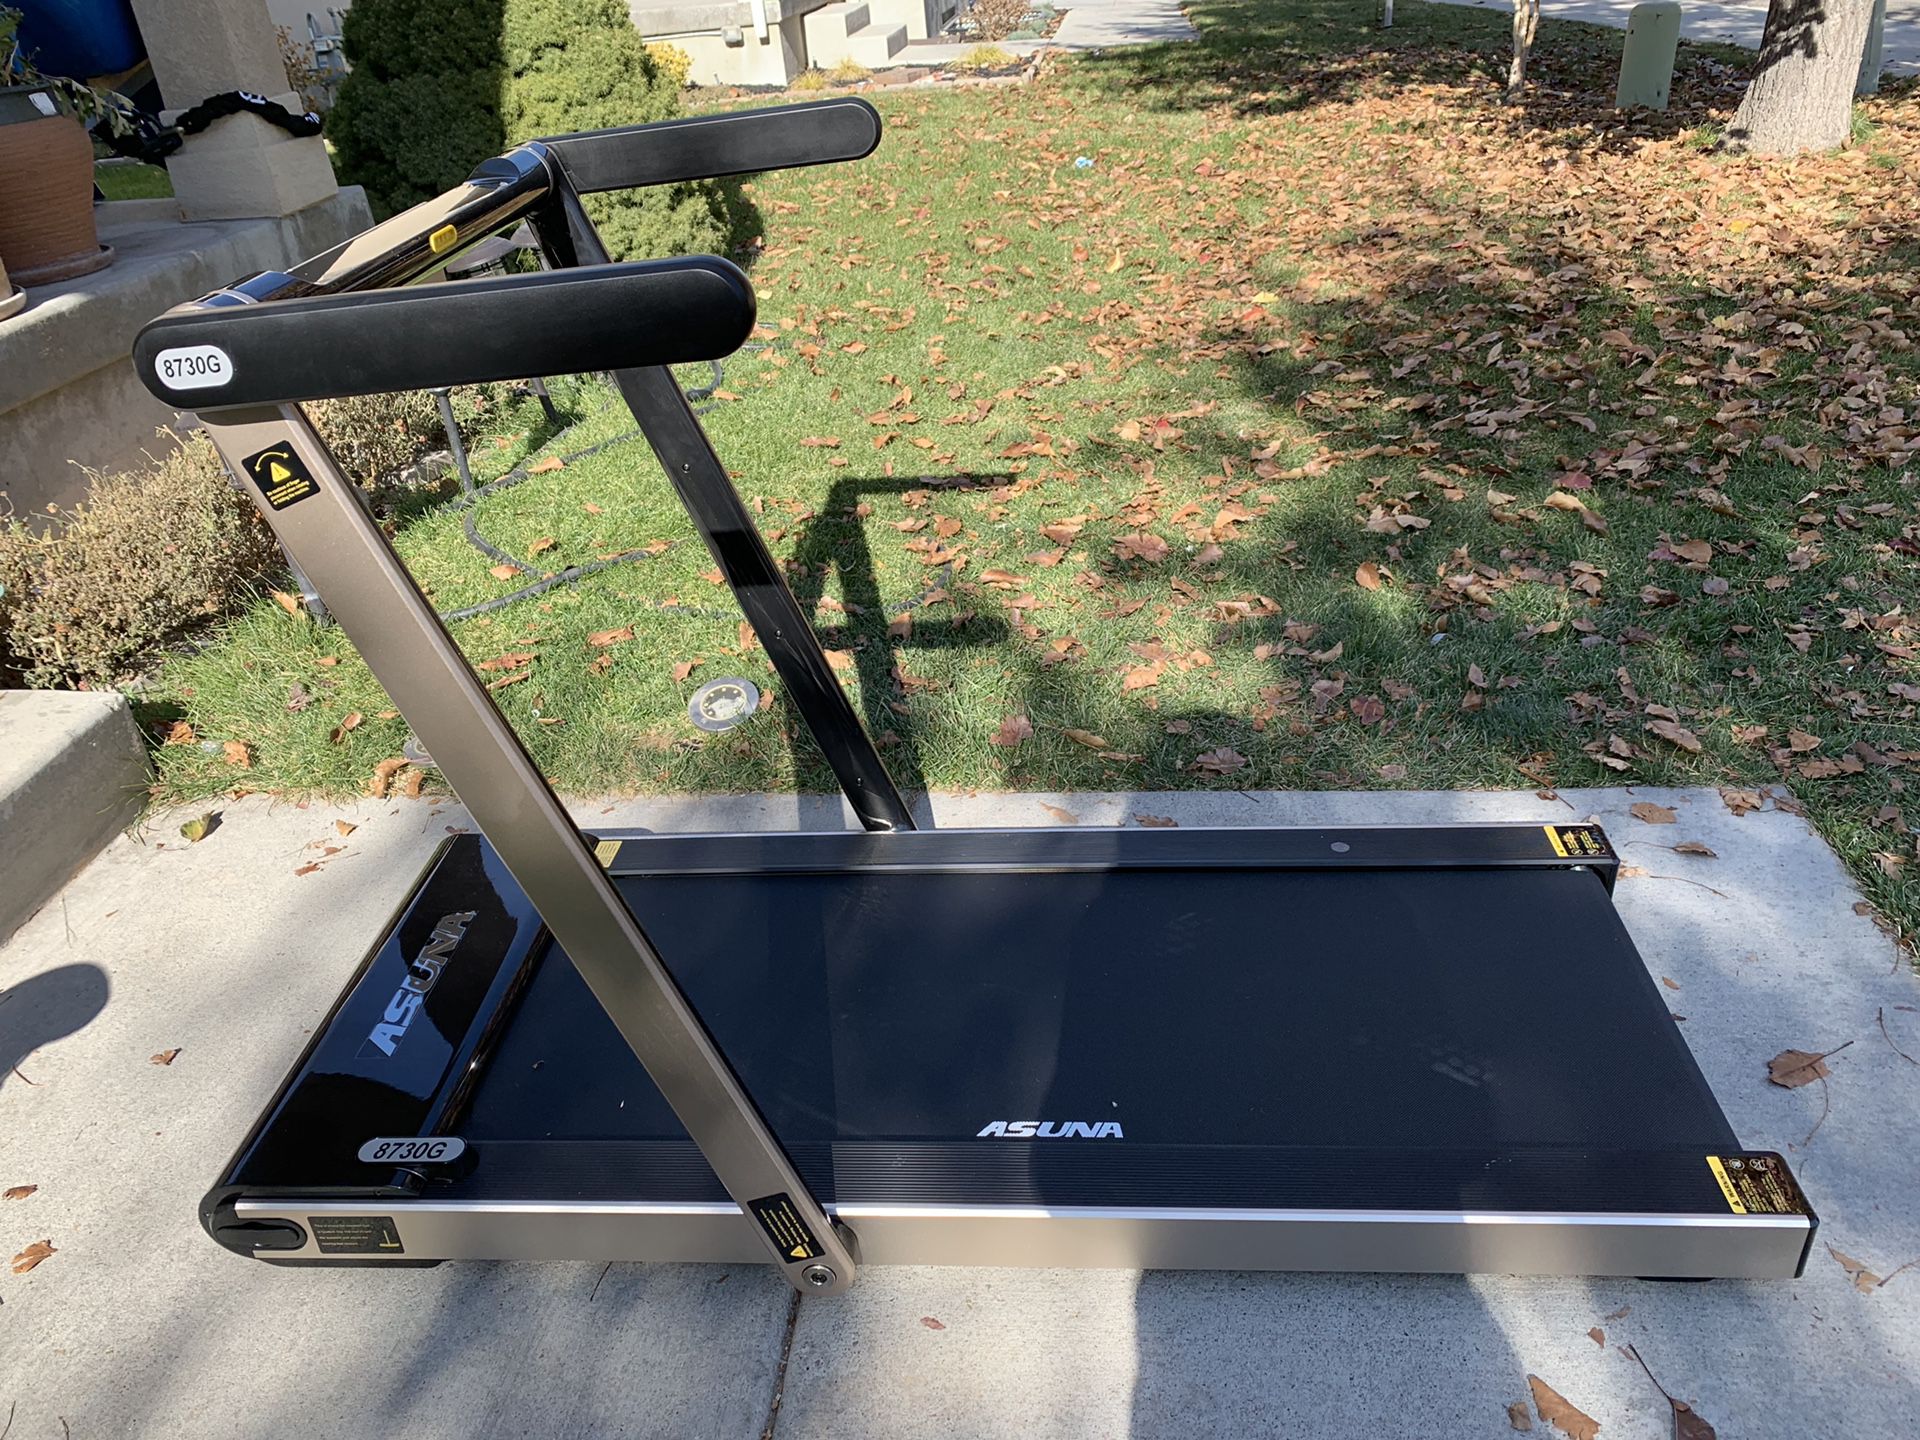 Brand new folding treadmill (retail $800)